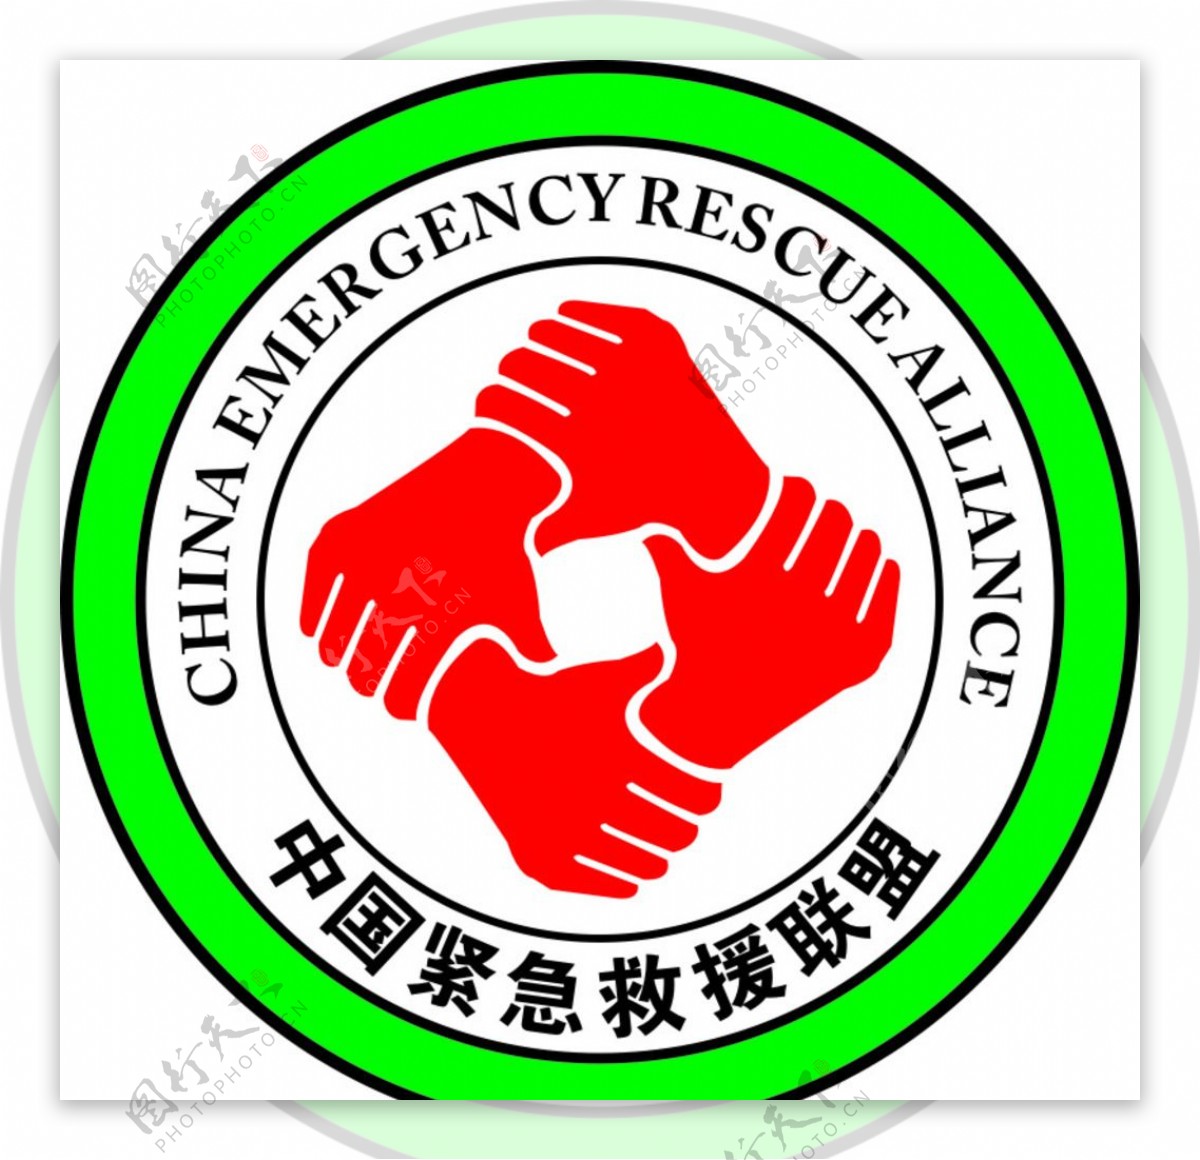 中国紧急救援联盟